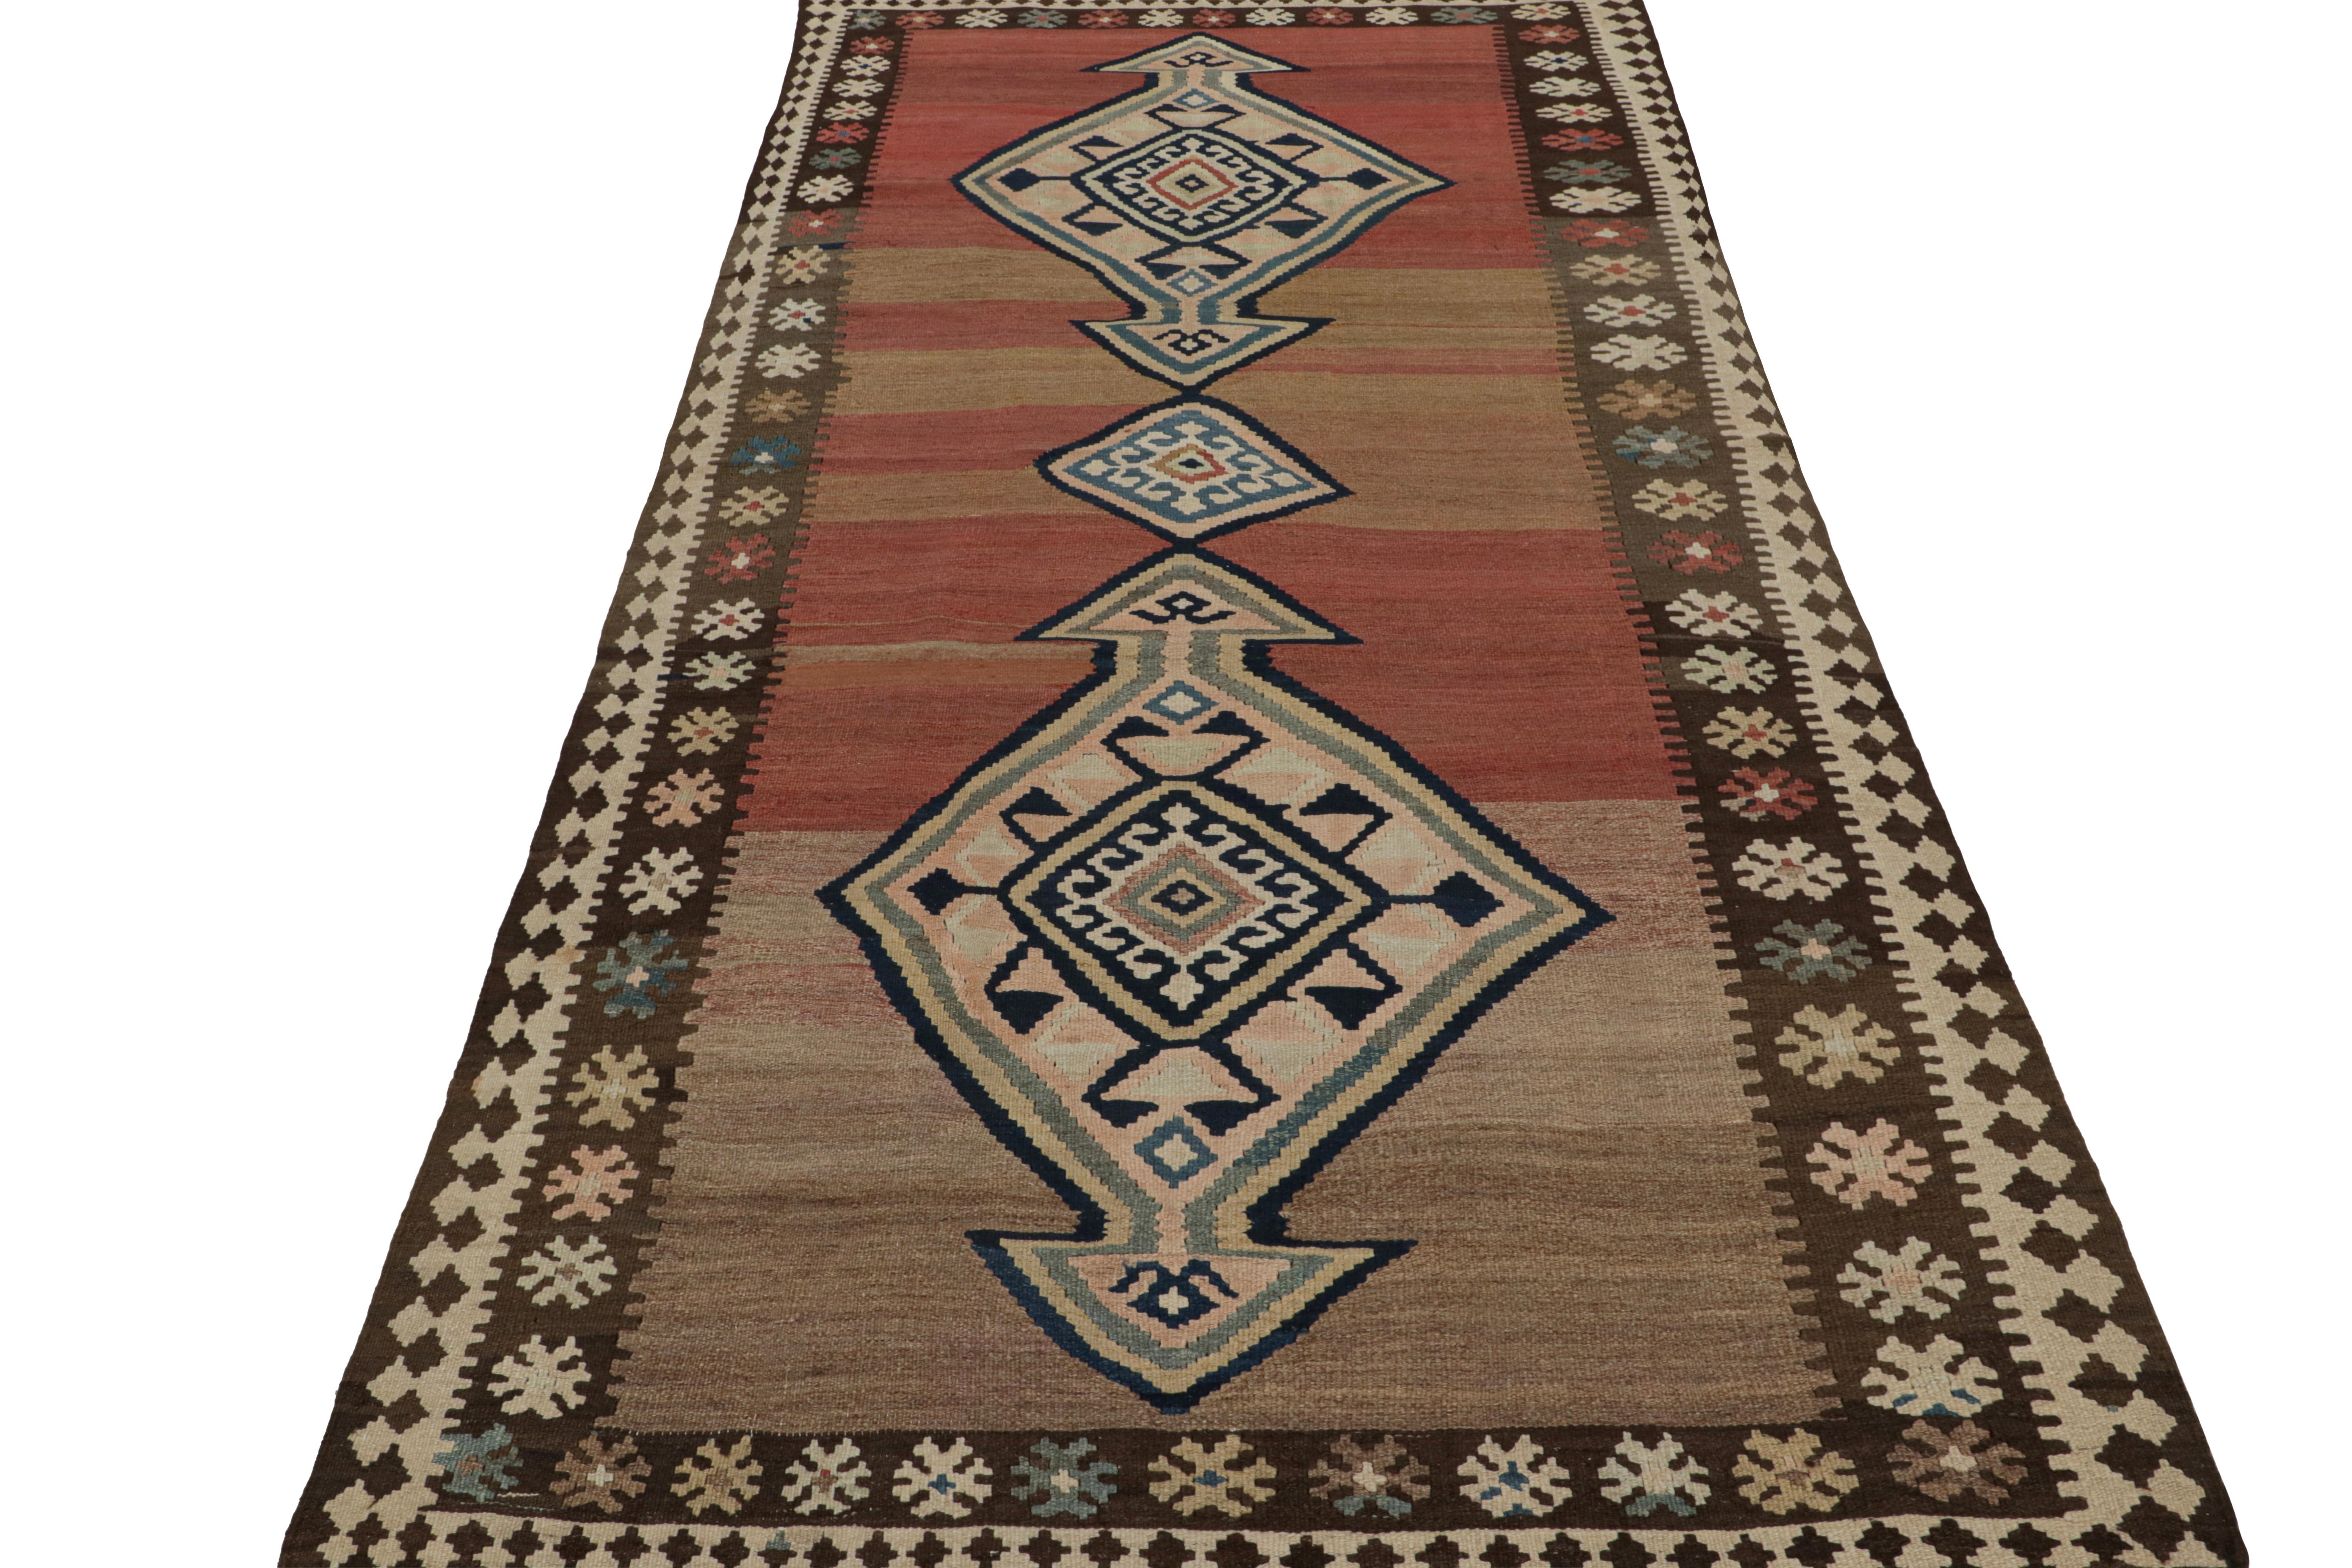 Afghan Vintage Persian Kilim rug in Brown, Red & Blue Tribal Patterns by Rug & Kilim For Sale